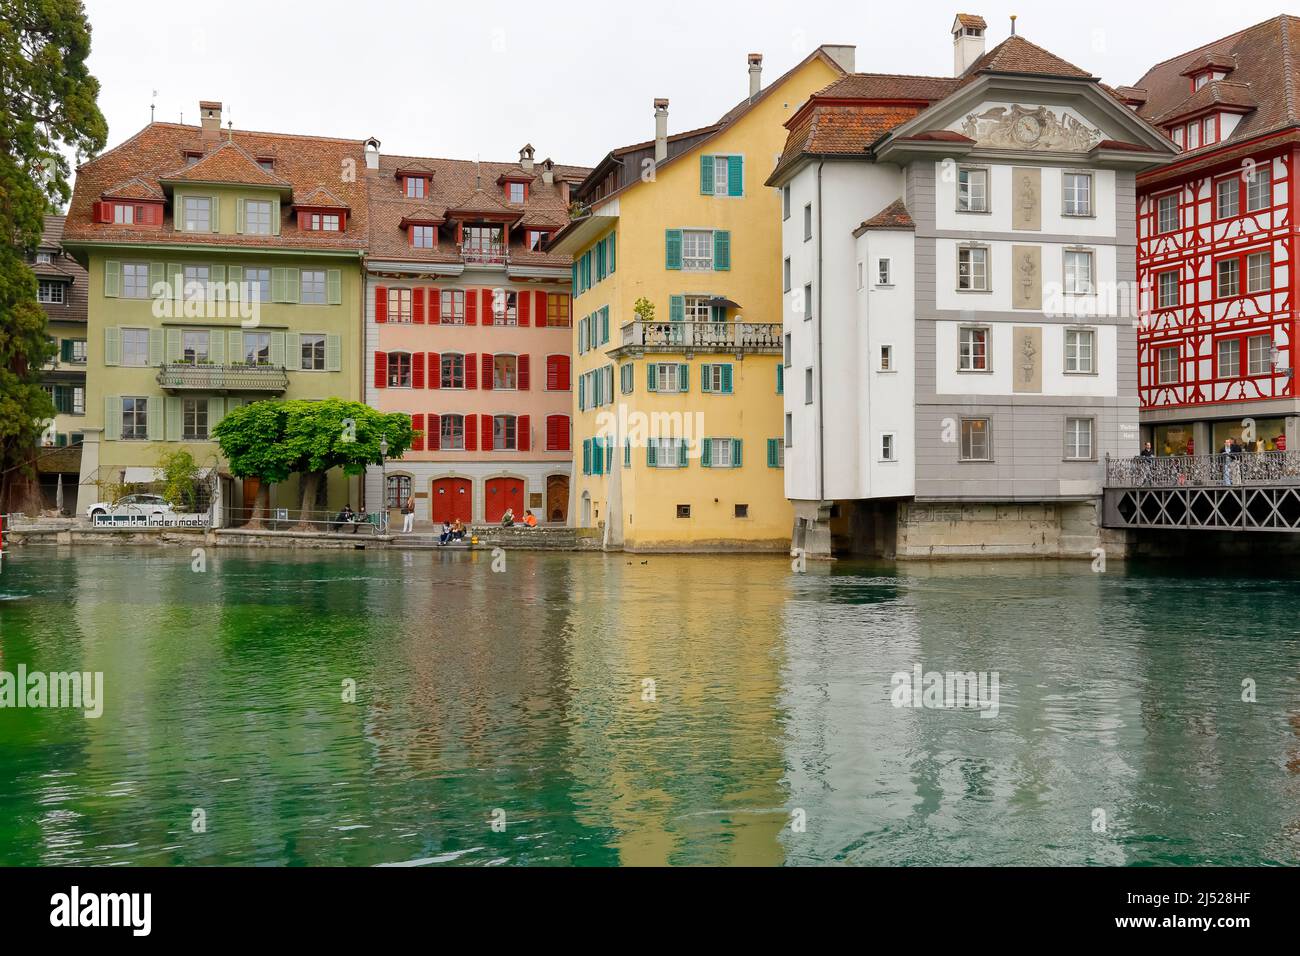 Lucerna, Suiza - 11 de mayo de 2016: Los antiguos y coloridos edificios del casco antiguo fueron construidos directamente a orillas del río Reuss. Aquí están a ver Foto de stock